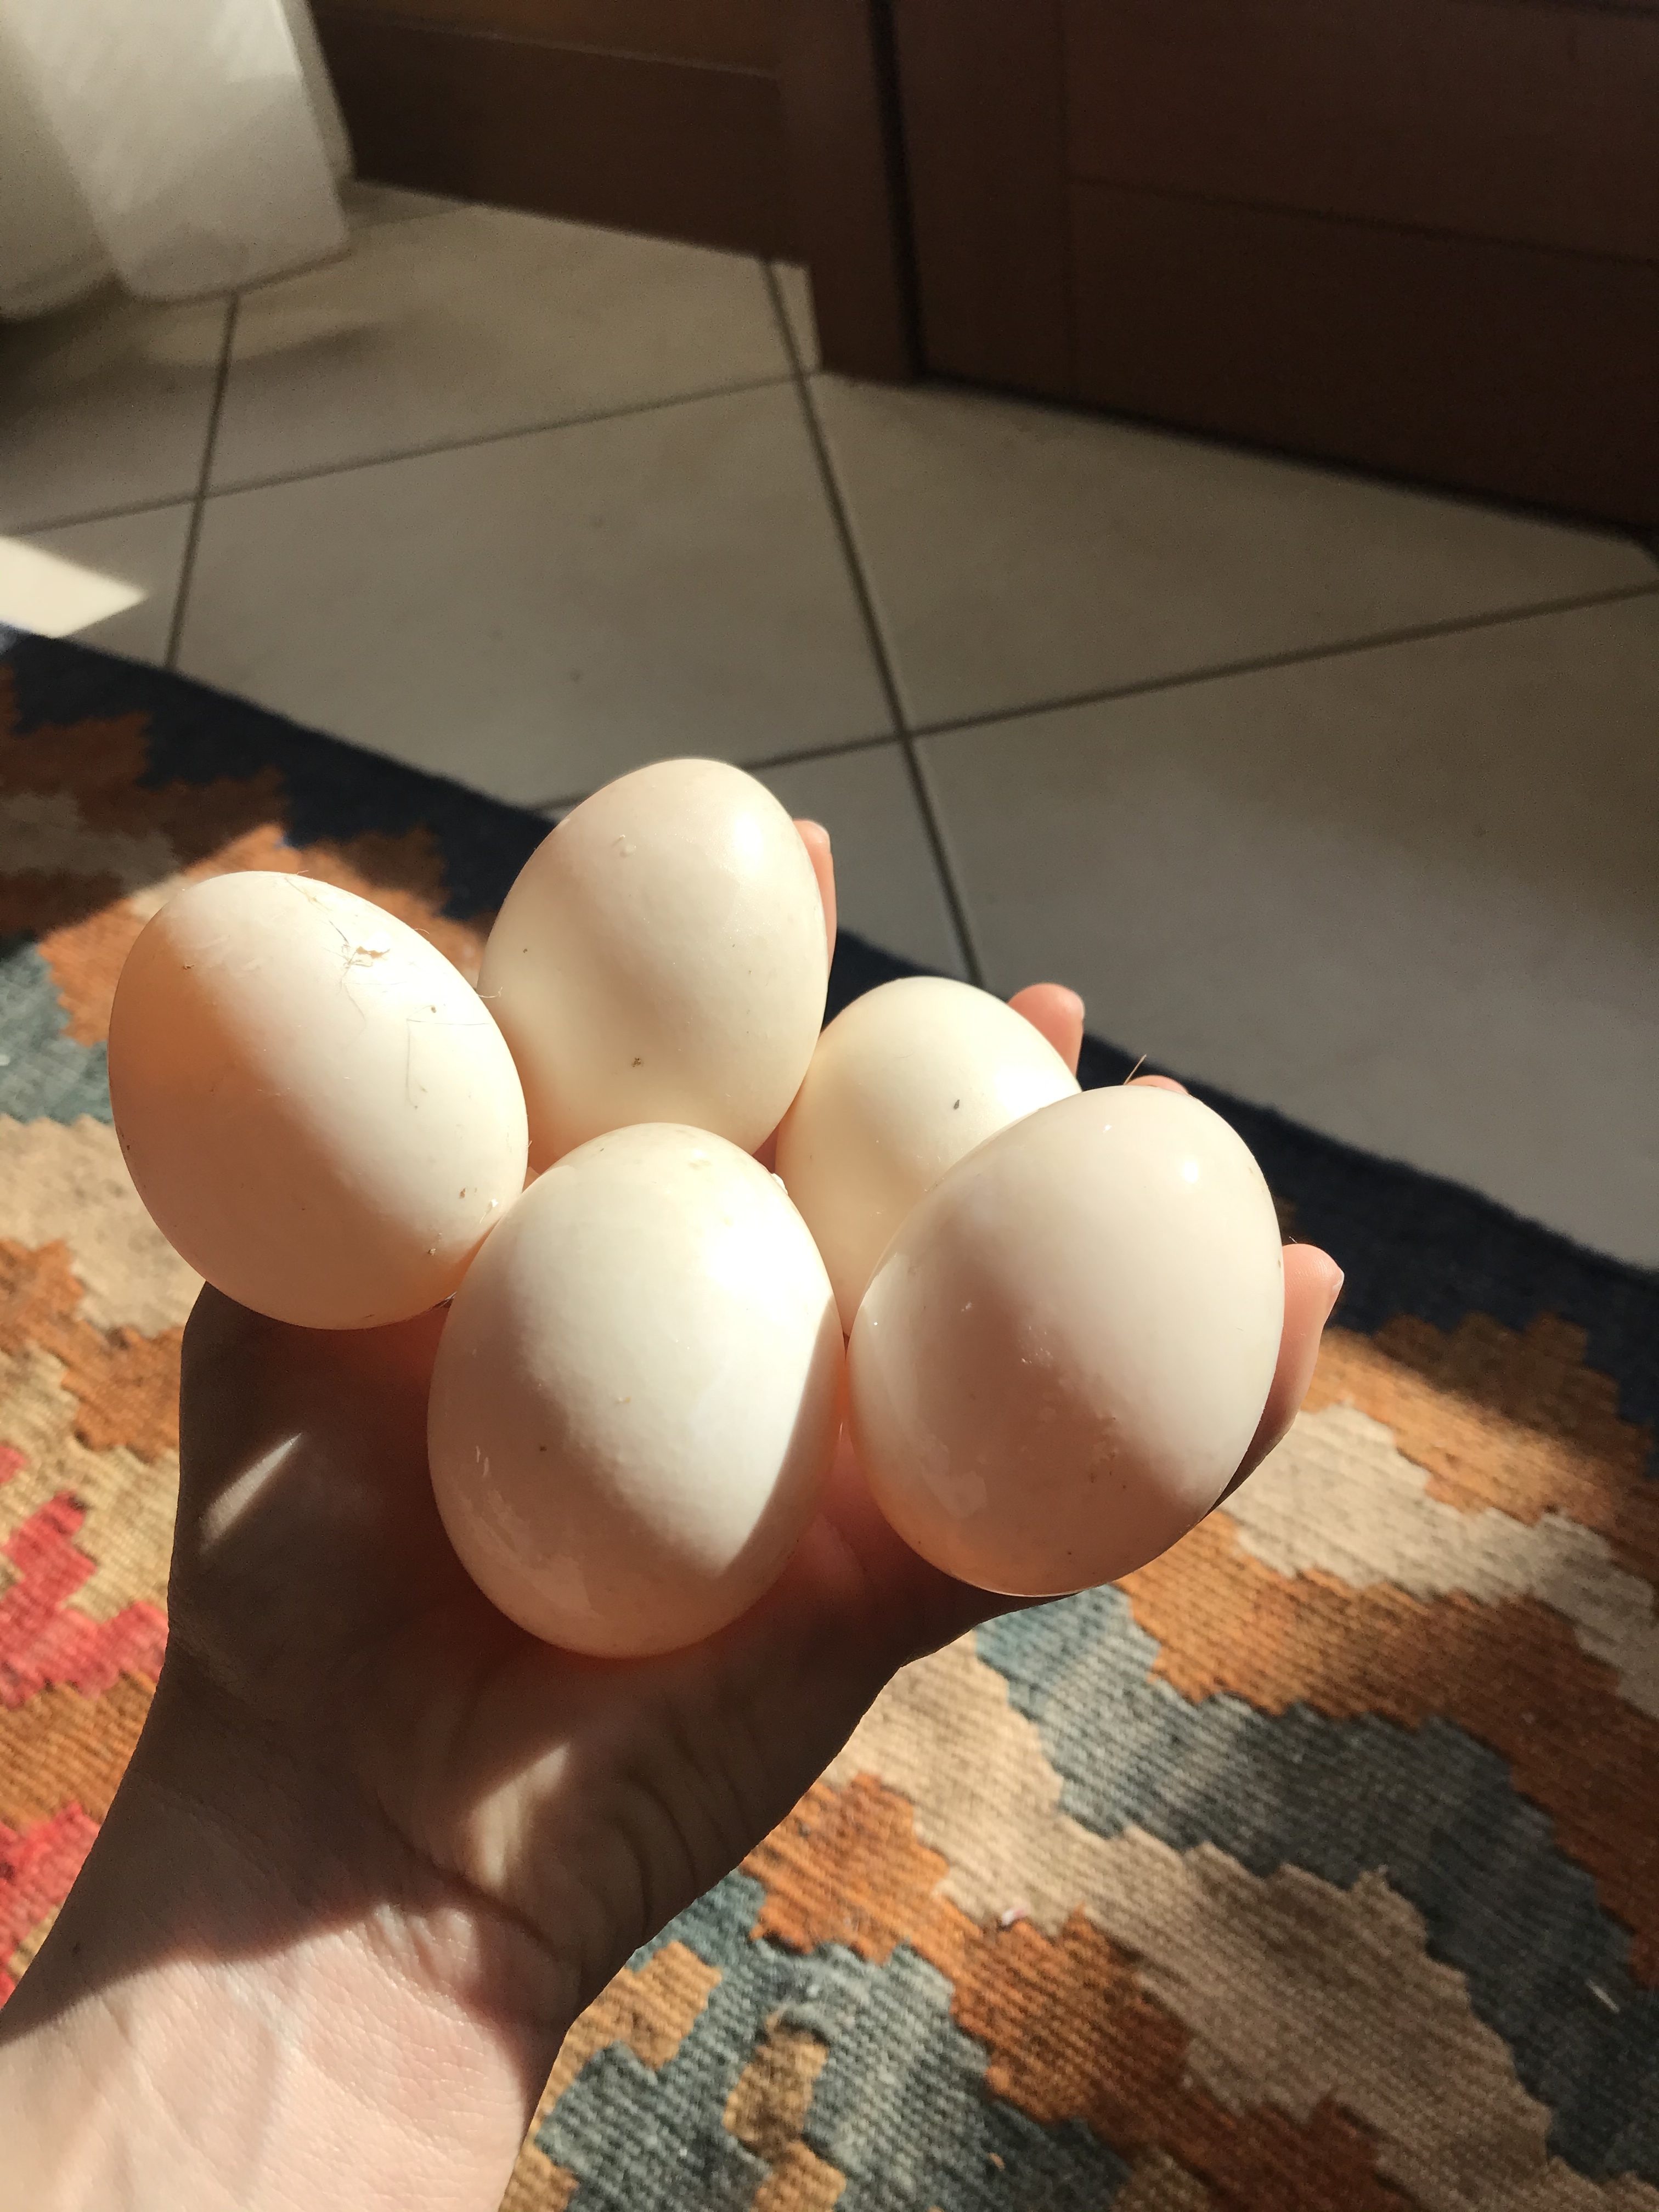 5 eggs held in hand